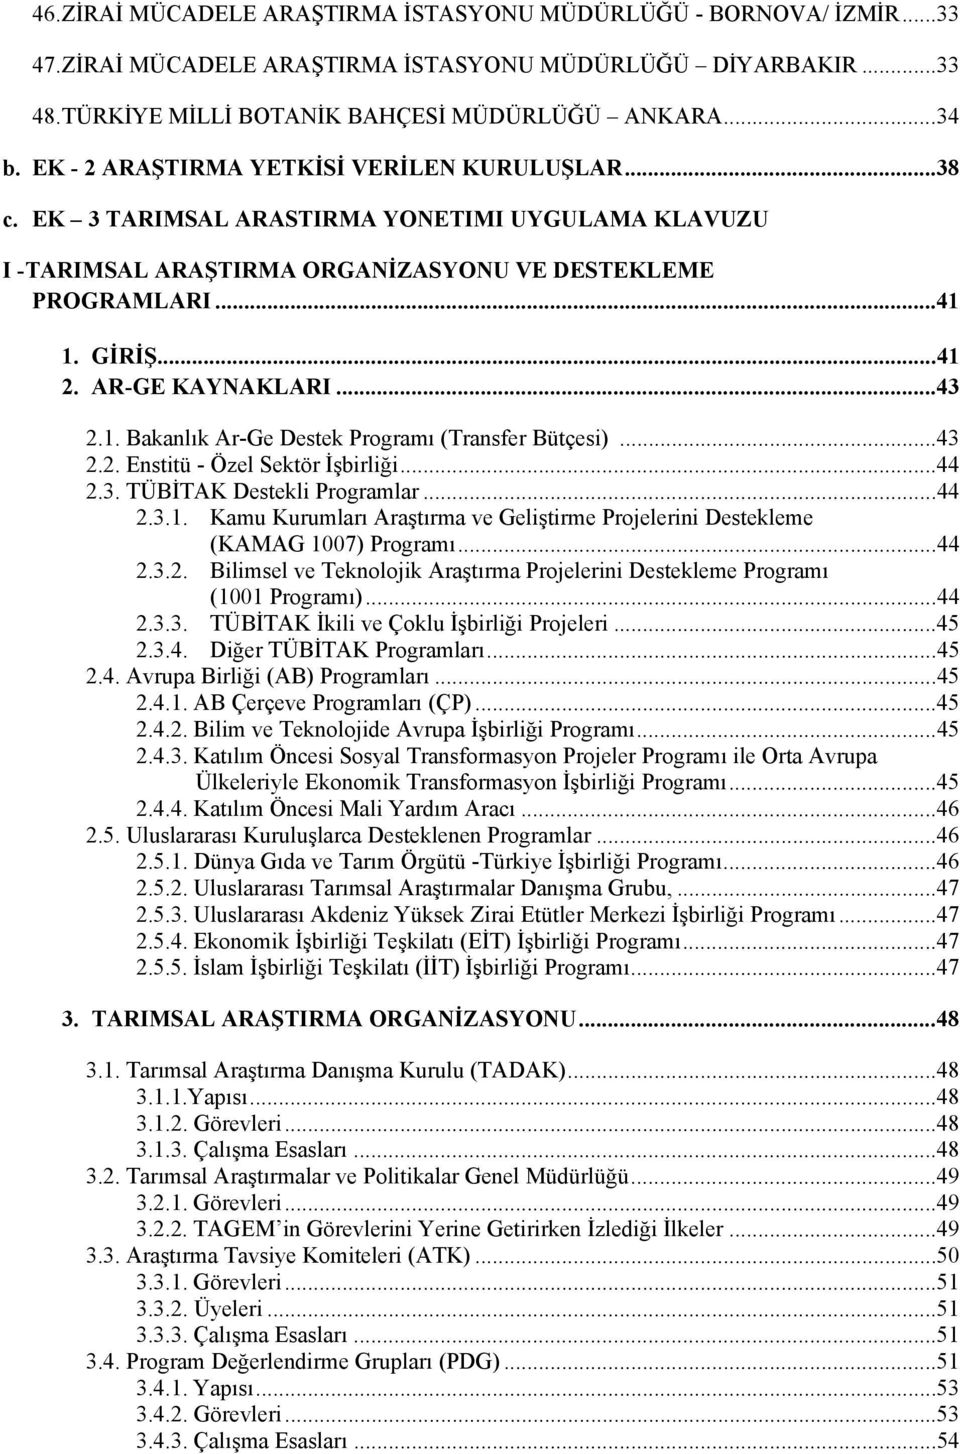 AR-GE KAYNAKLARI... 43 2.1. Bakanlık Ar-Ge Destek Programı (Transfer Bütçesi)... 43 2.2. Enstitü - Özel Sektör İşbirliği... 44 2.3. TÜBİTAK Destekli Programlar... 44 2.3.1. Kamu Kurumları Araştırma ve Geliştirme Projelerini Destekleme (KAMAG 1007) Programı.